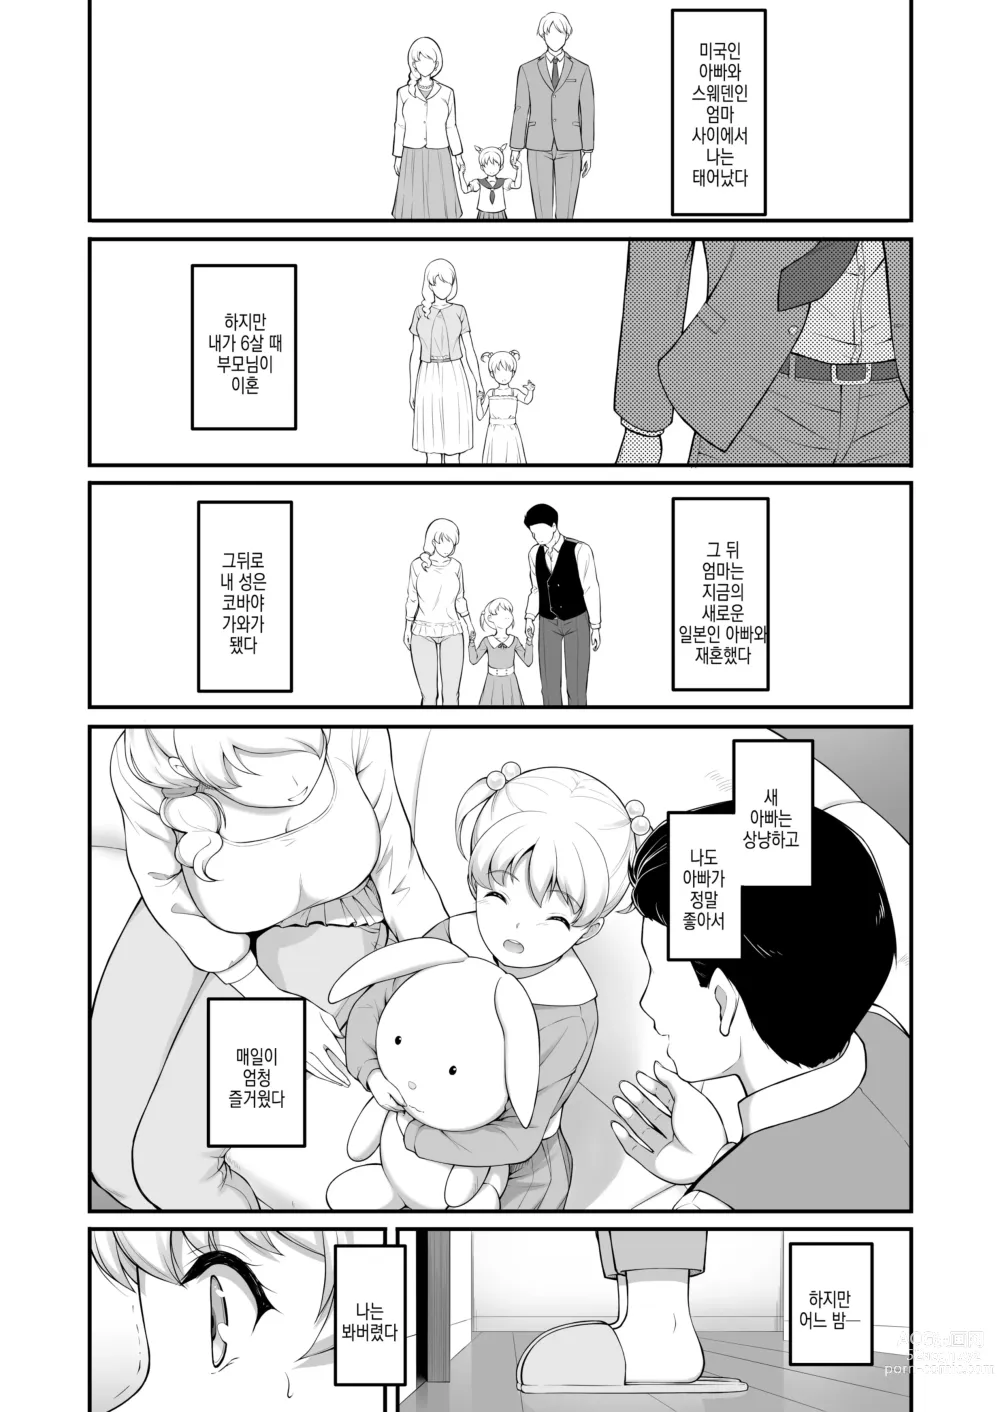 Page 79 of doujinshi 여자 배구부 JK, 네토라레 당하다 2